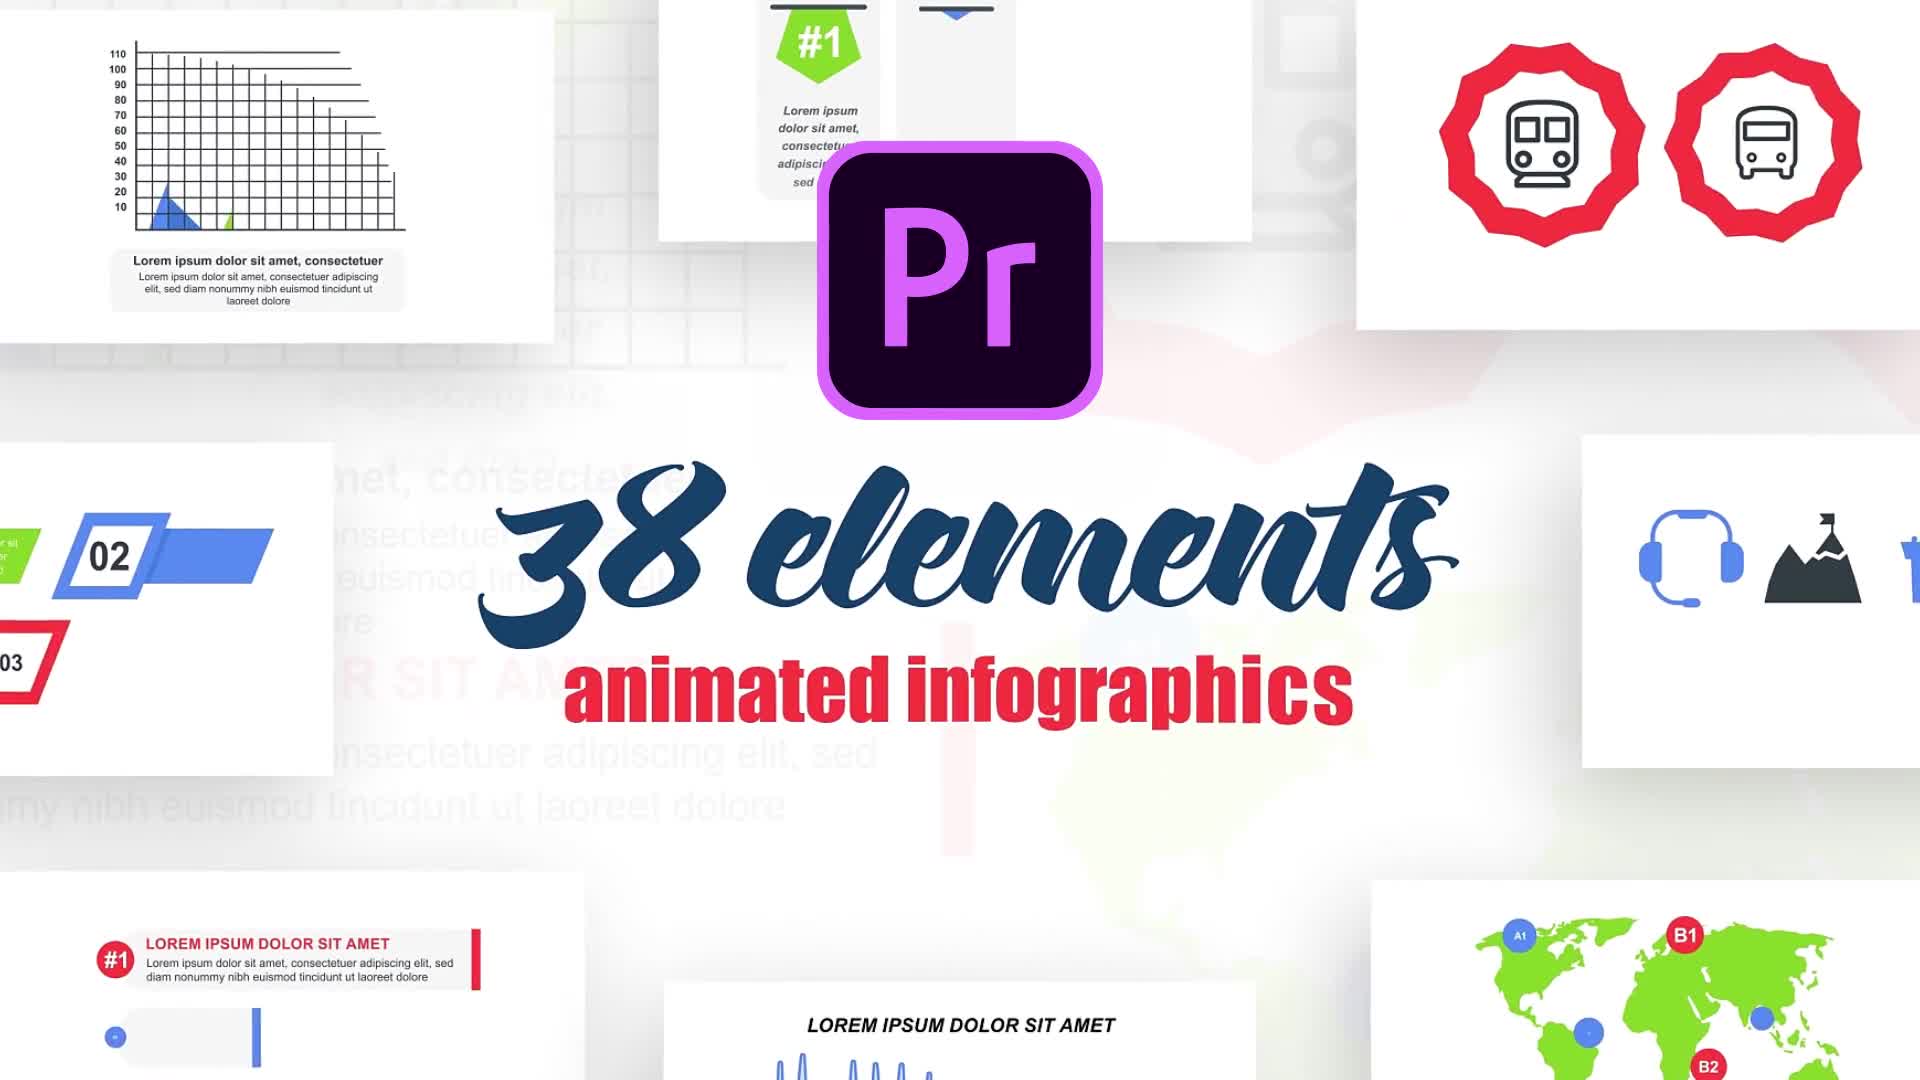 Corporate Infographics Vol.35 for Premiere Pro Videohive 27526012 Premiere Pro Image 1